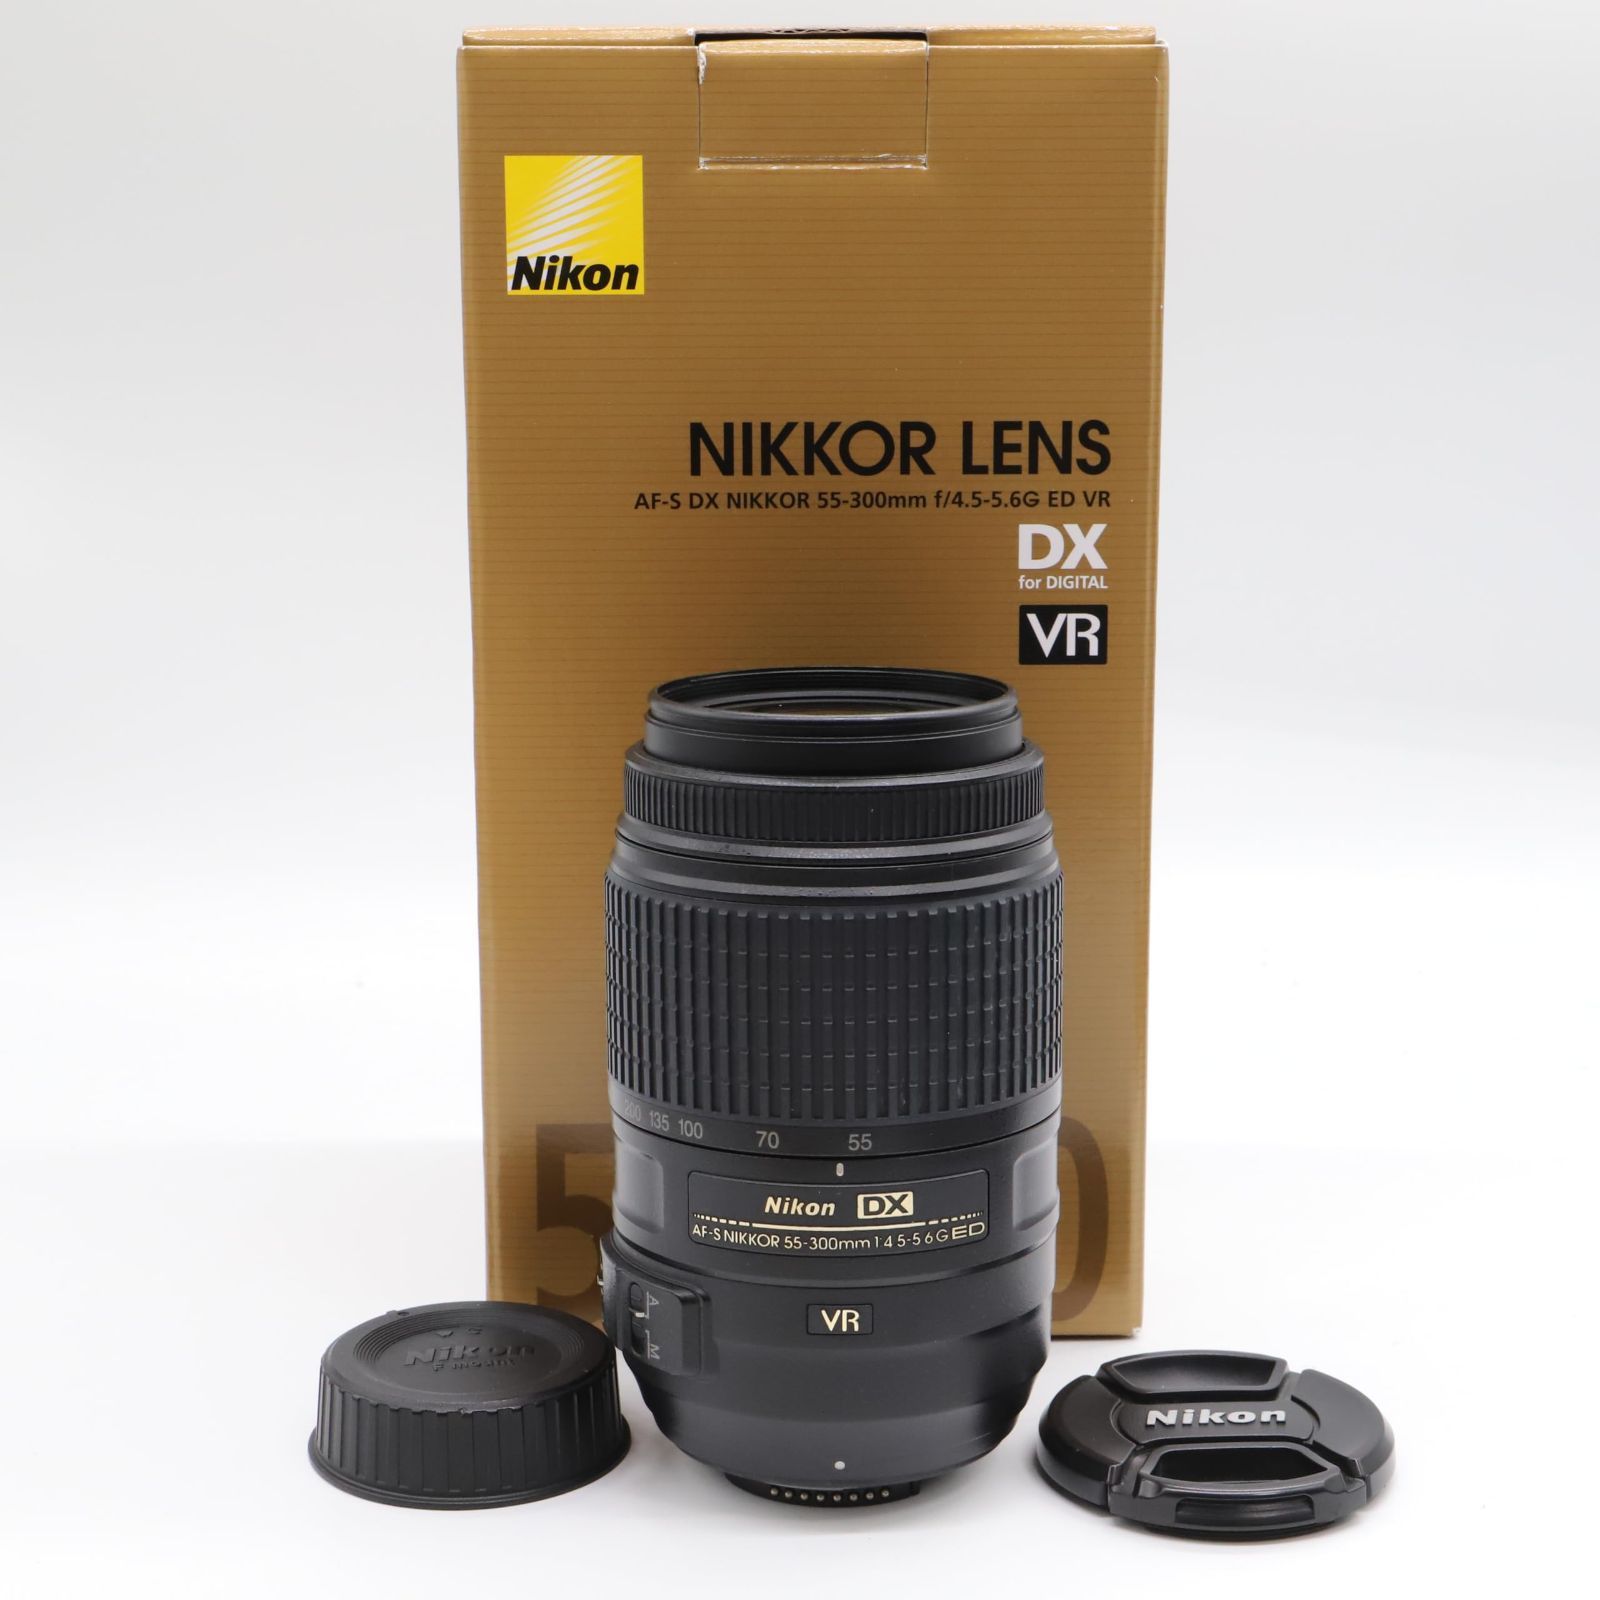 良品】Nikon 望遠ズームレンズ AF-S DX NIKKOR 55-300mm f/4.5-5.6G ED